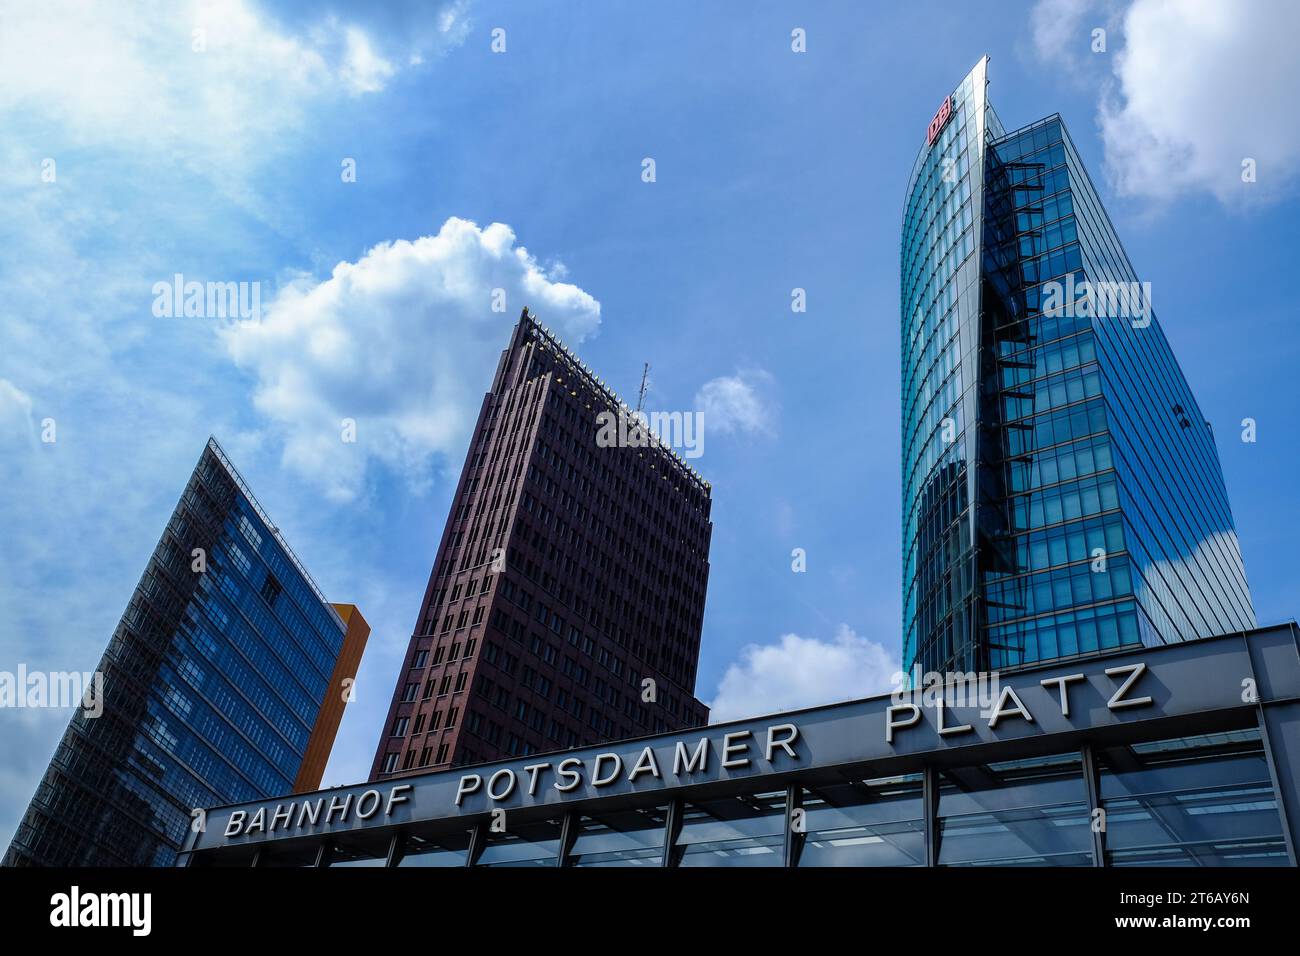 Die dynamische urbane Szene am Potsdamer Platz fängt Berlins Modernität und Vitalität ein. Stockfoto